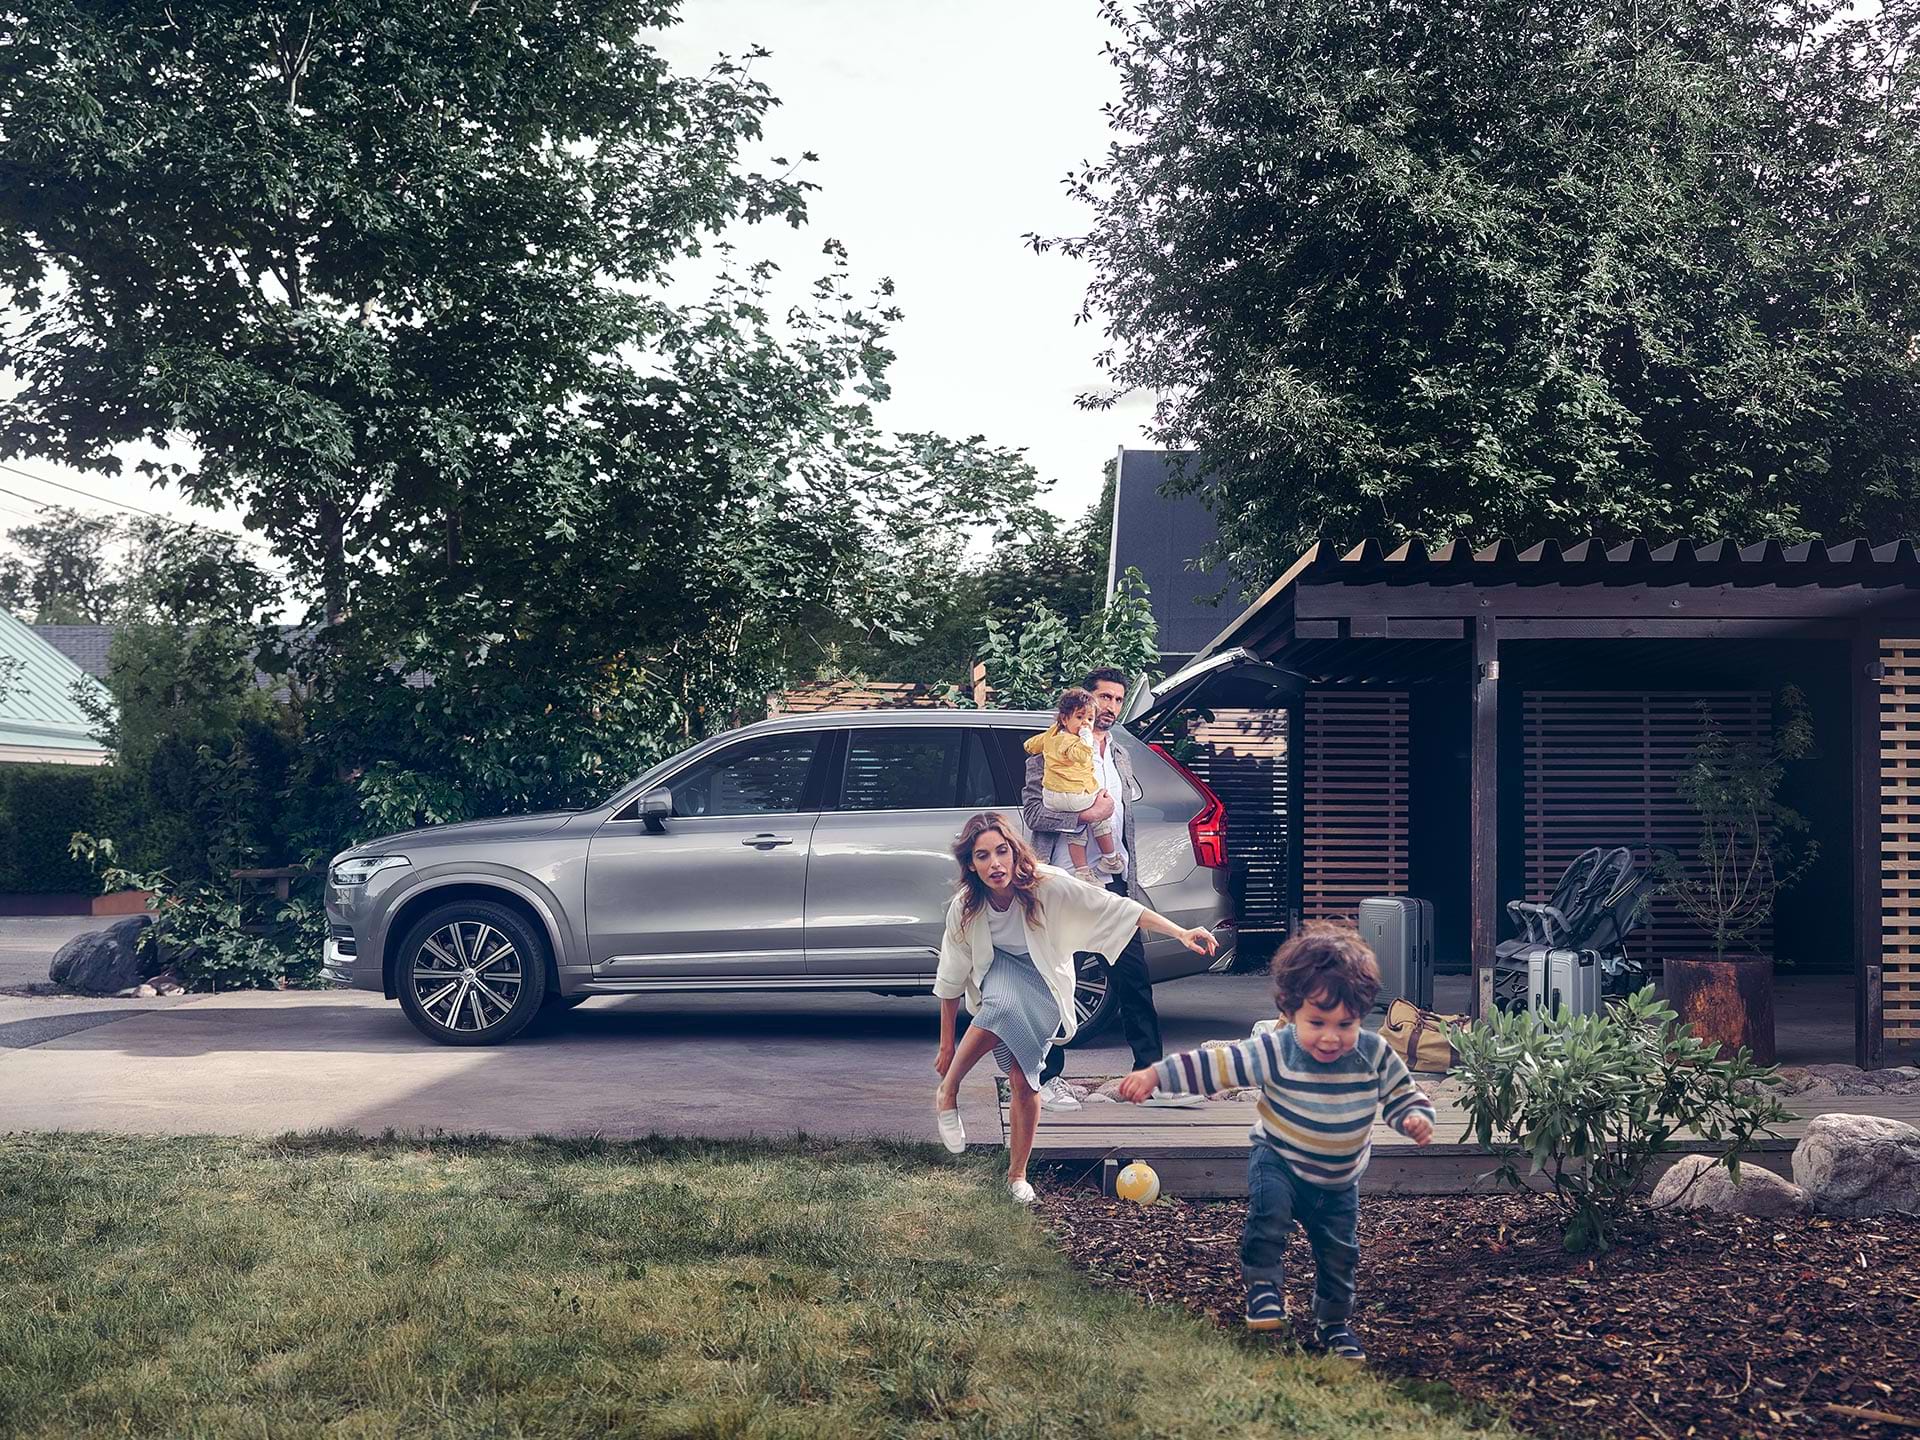 En familj förbereder sig för en resa i sin SUV från Volvo medan ett barn springer över gården följt av sin mamma.